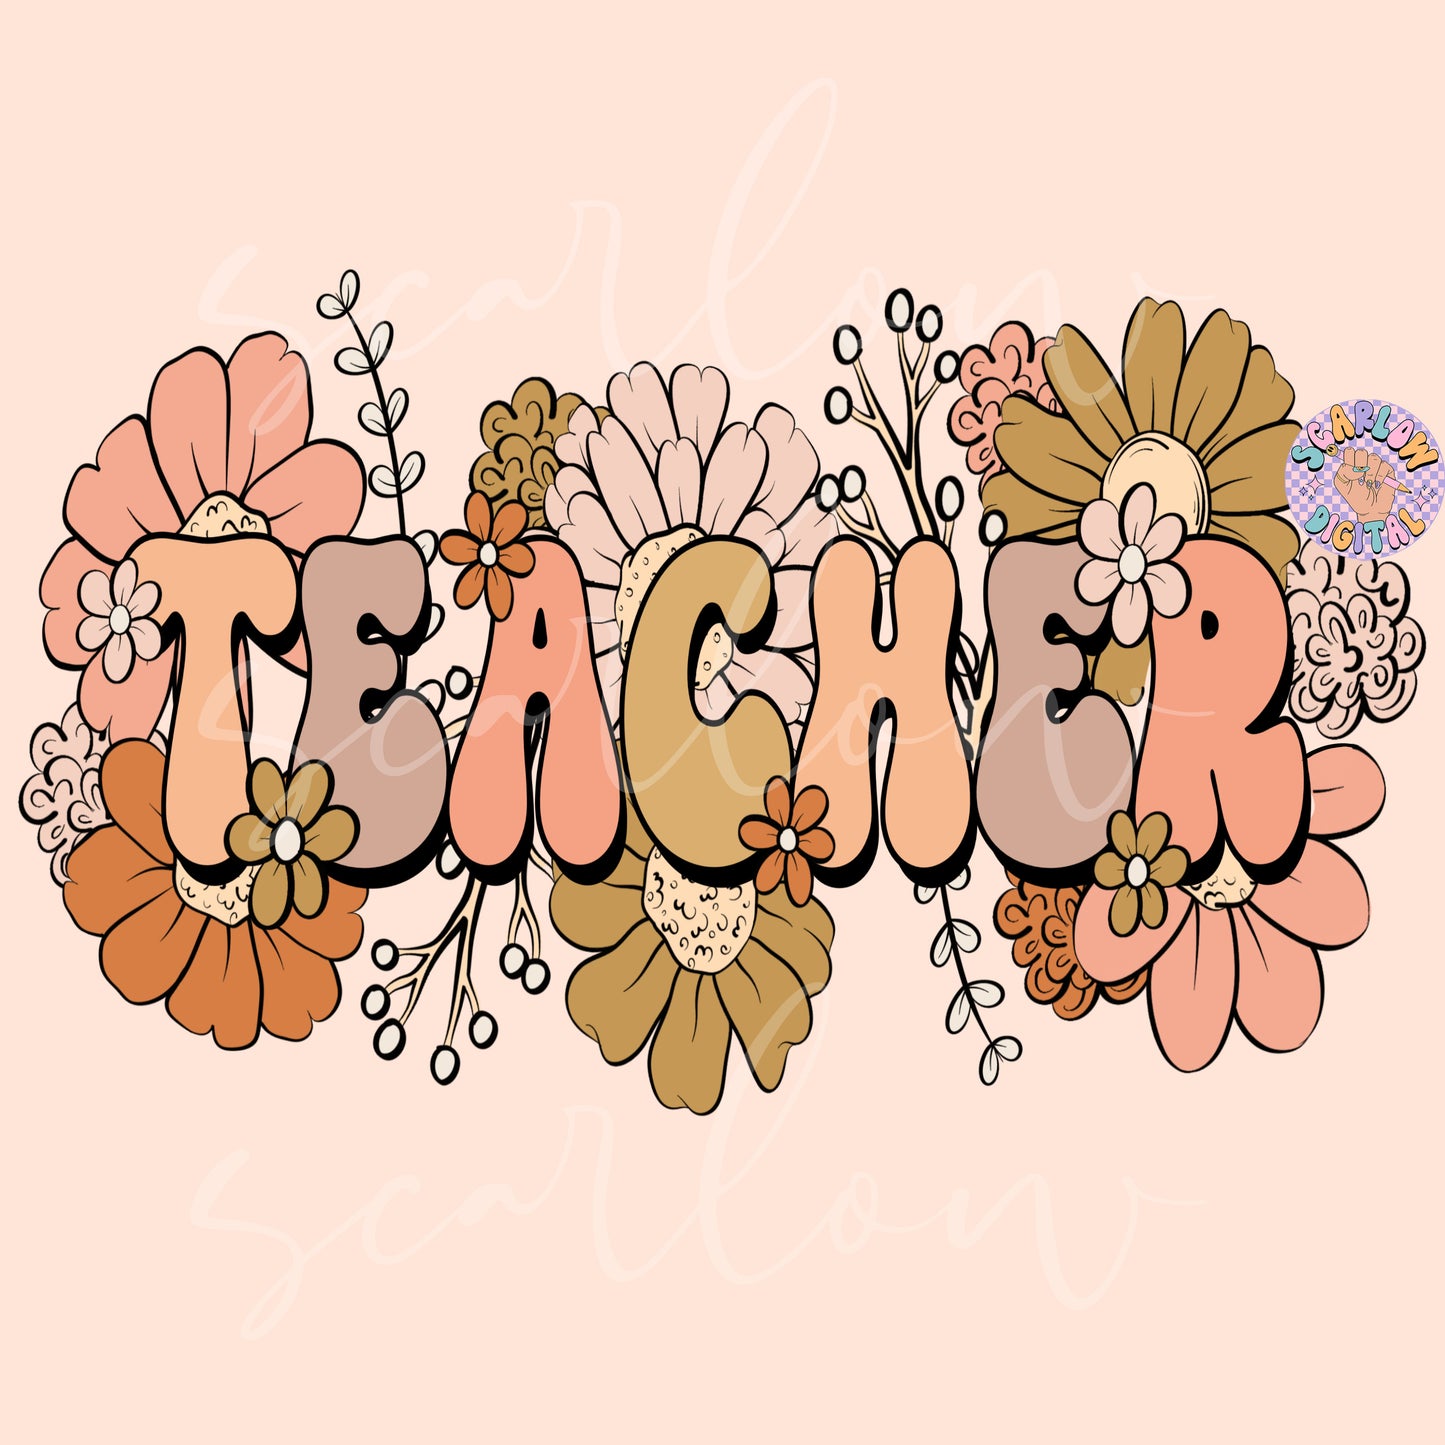 Floral Teacher PNG Sublimation Digital Design Download, flowers png, teacher png designs, png for teachers, back to school teacher png